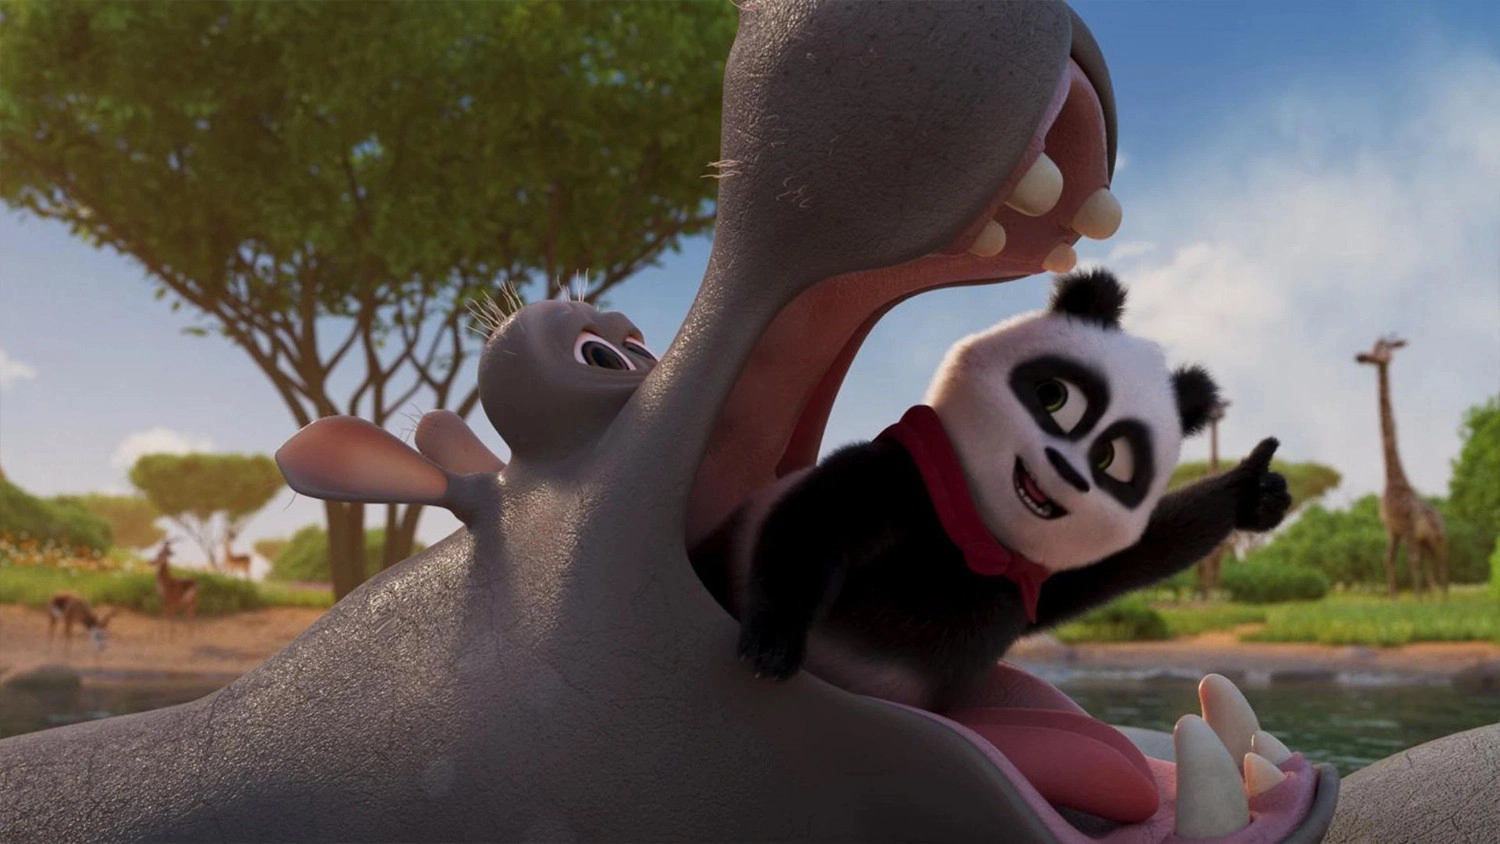 Review phim Panda Đại Náo Lãnh Địa Vua Sư Tử, Chuyến phiêu lưu đầy màu sắc với thiên đường động vật hoang dã ở châu Phi